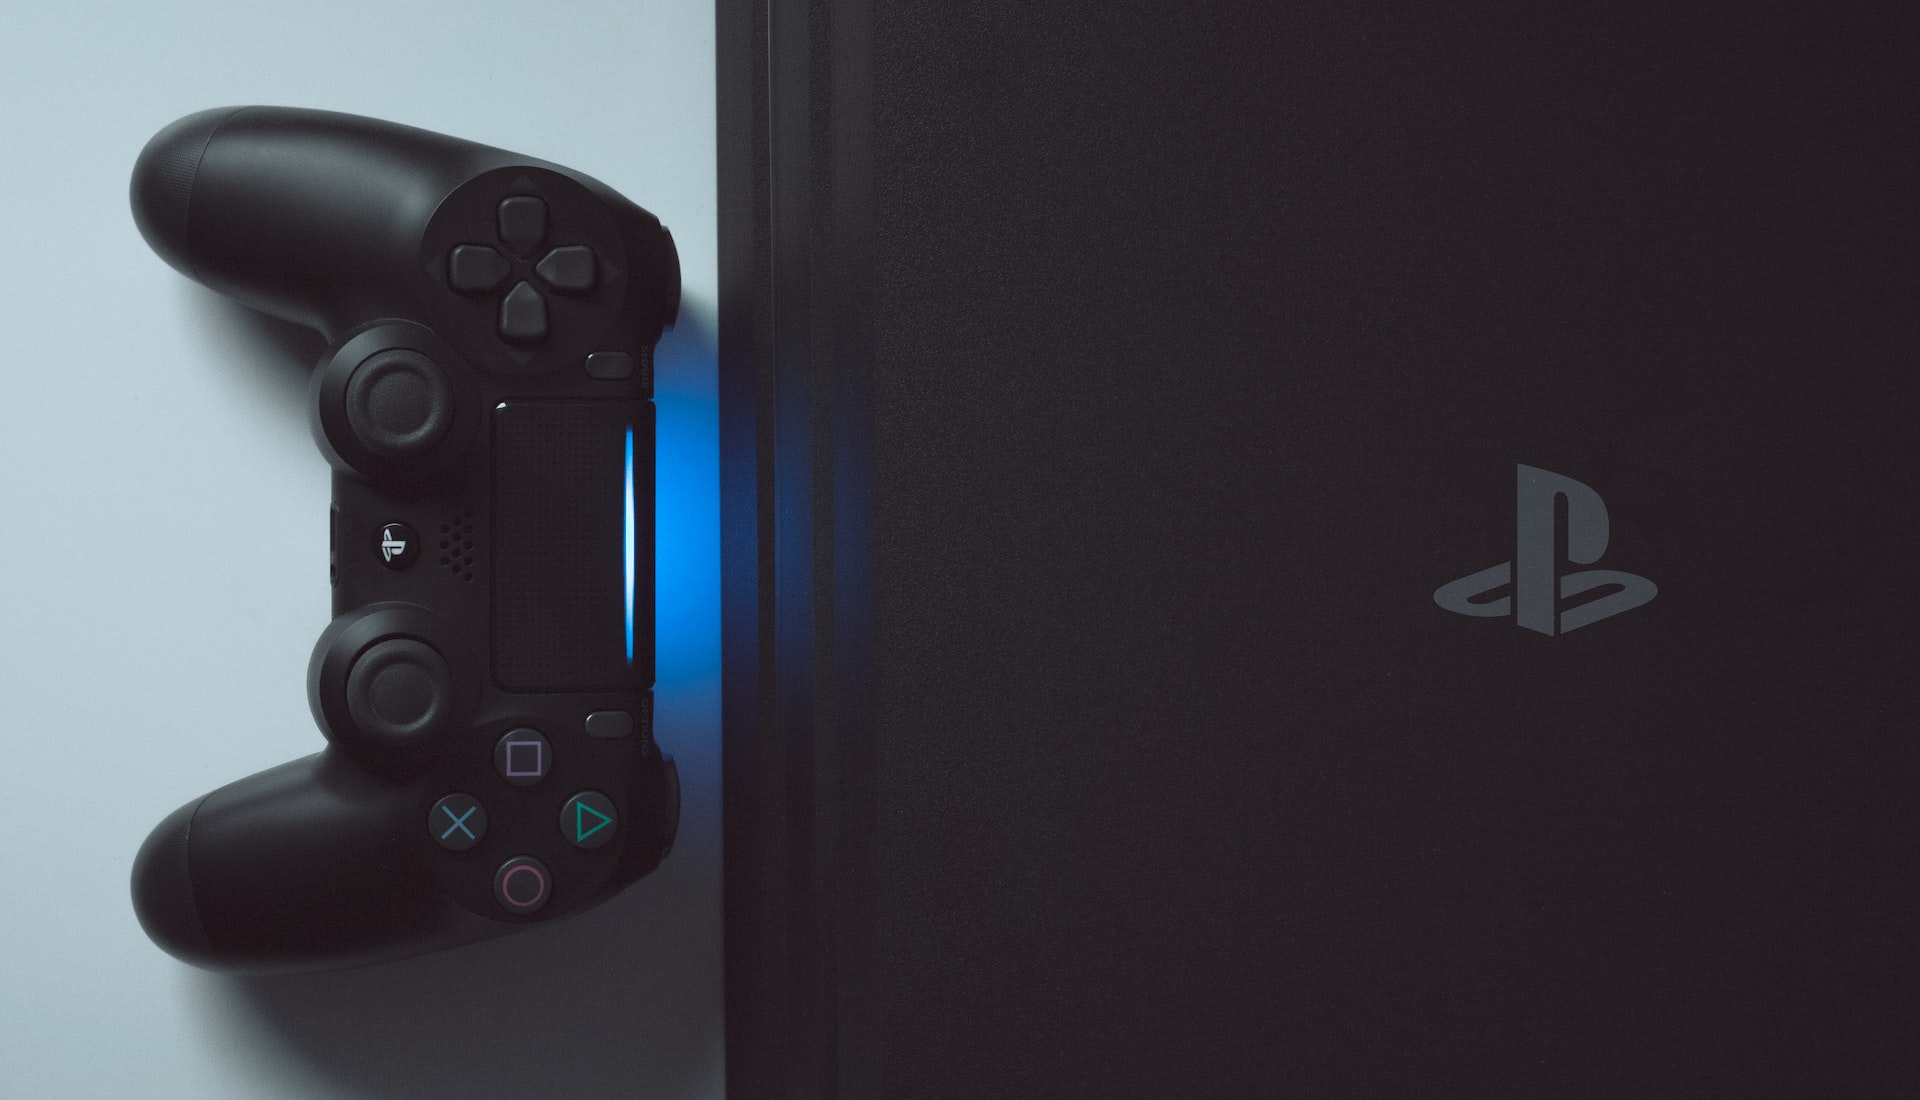 Imagem mostra o PlayStation 4, console da Sony